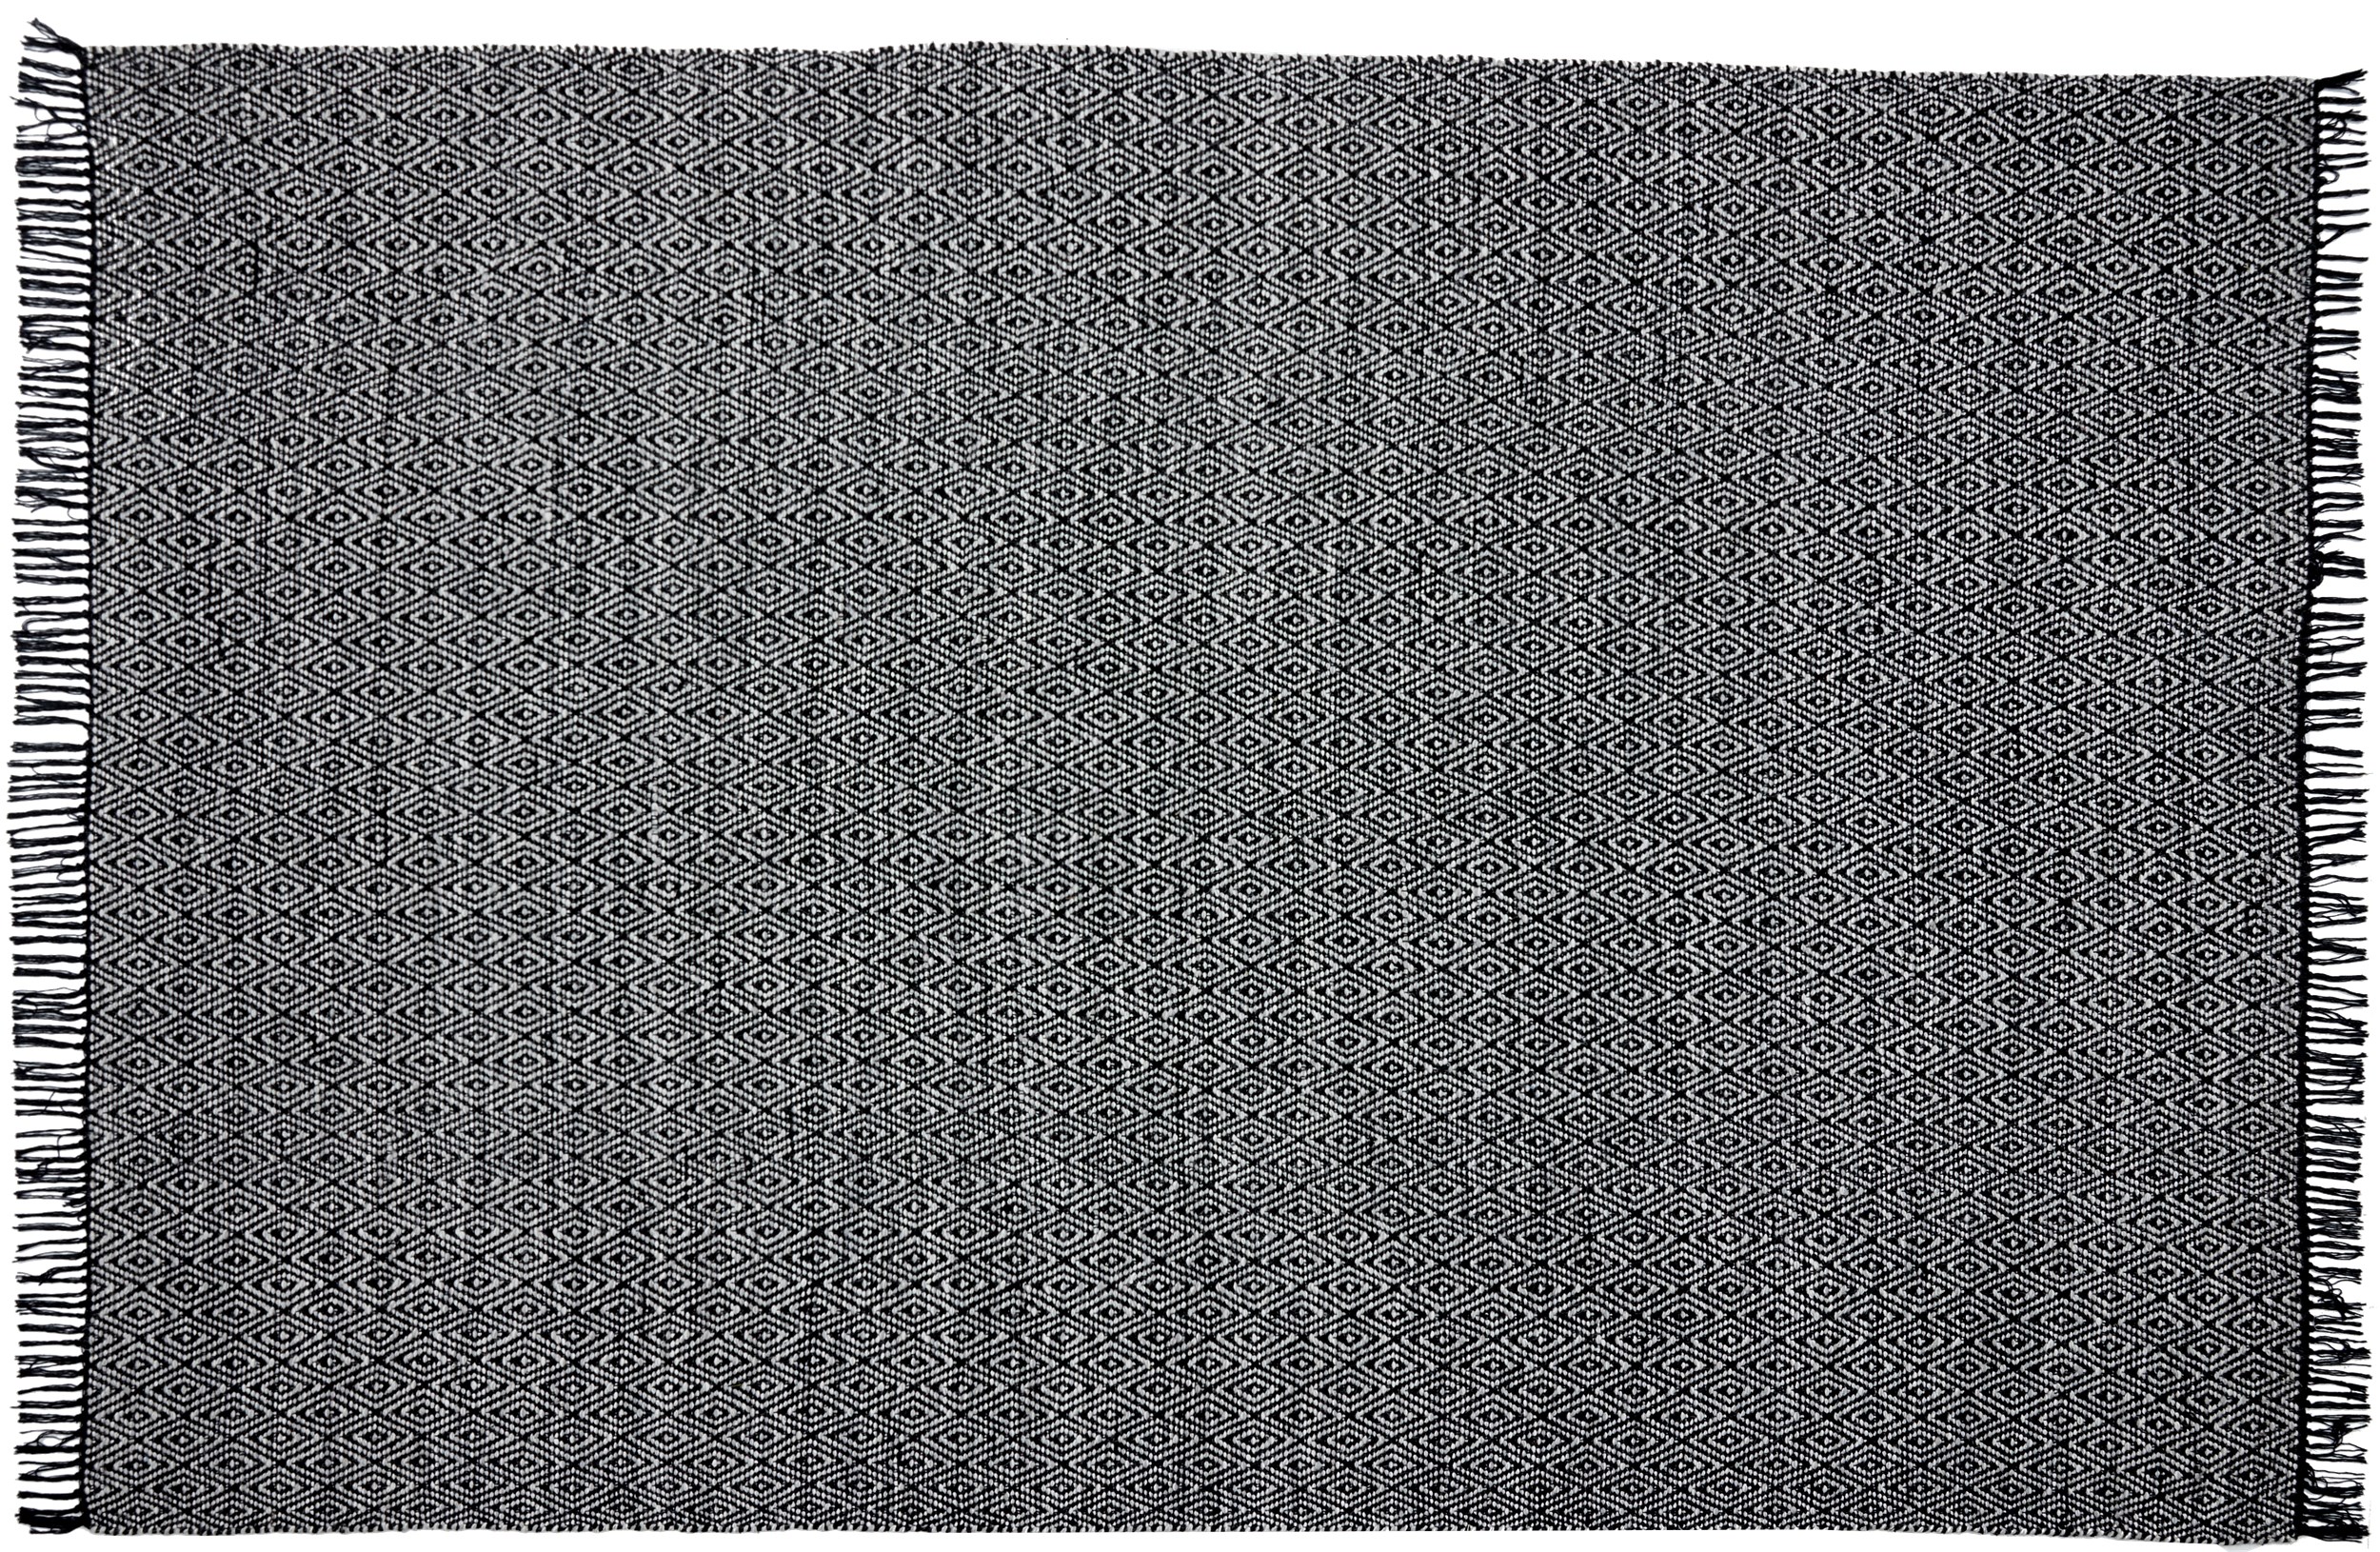 Rold Kelimmatta 160 x 230 cm - Offwhite/svart, diamant form och fransar